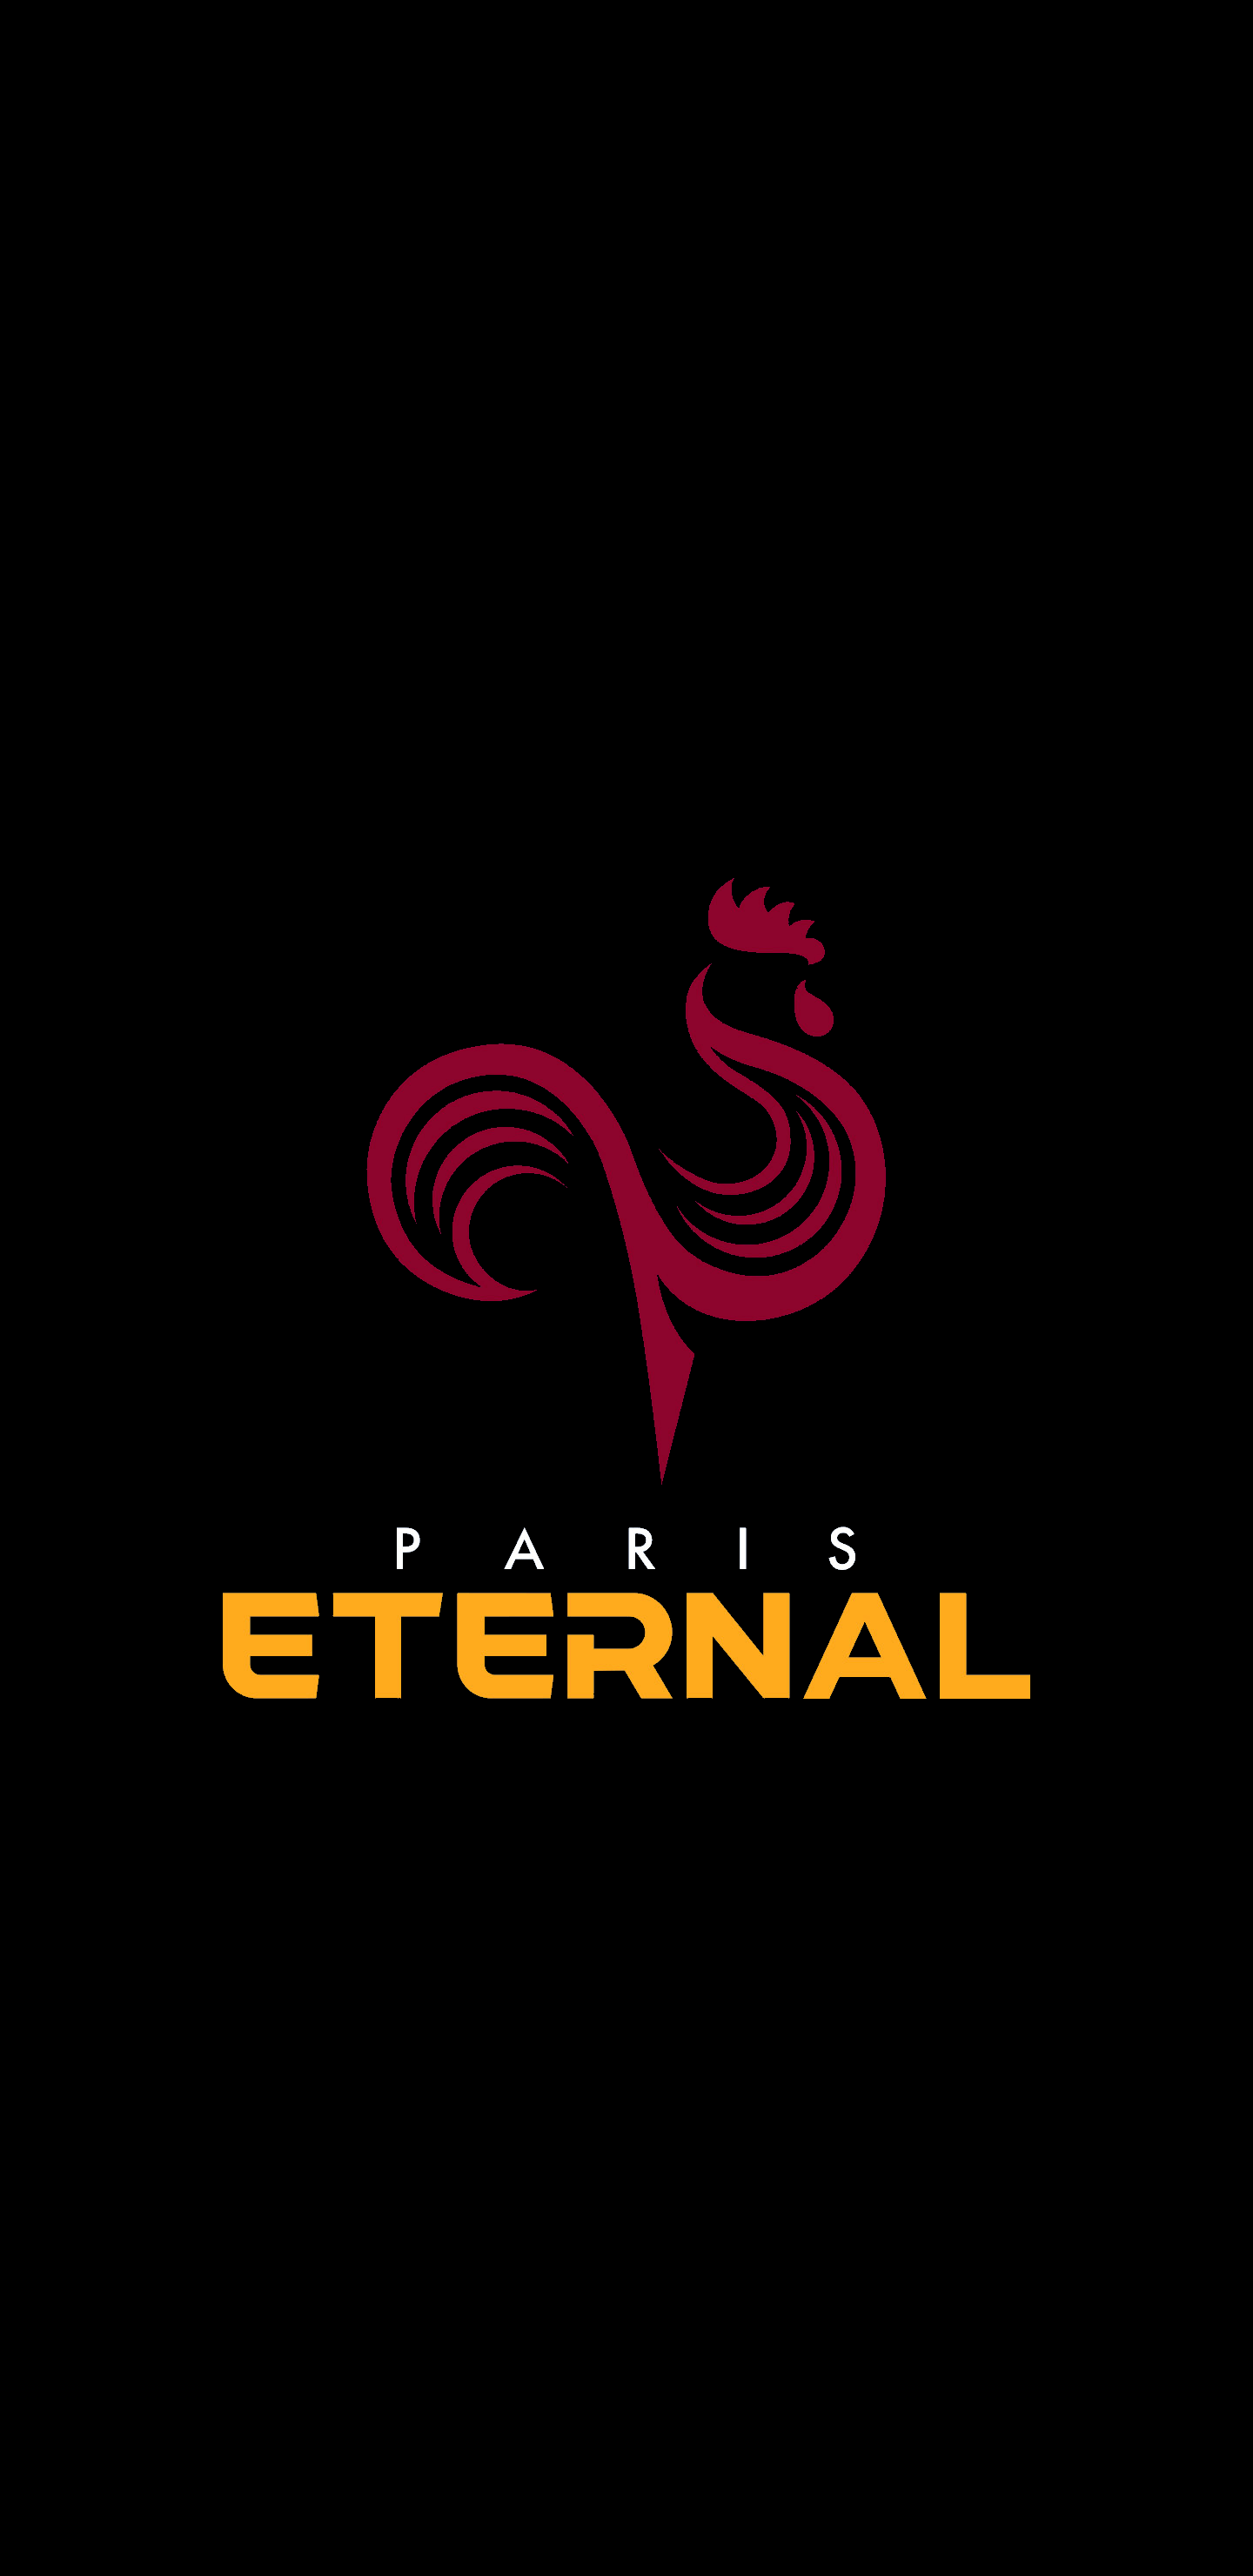 Eternal Logo - Paris Eternal Logo - Overwatch League (96.43%) [1440x2960 ...